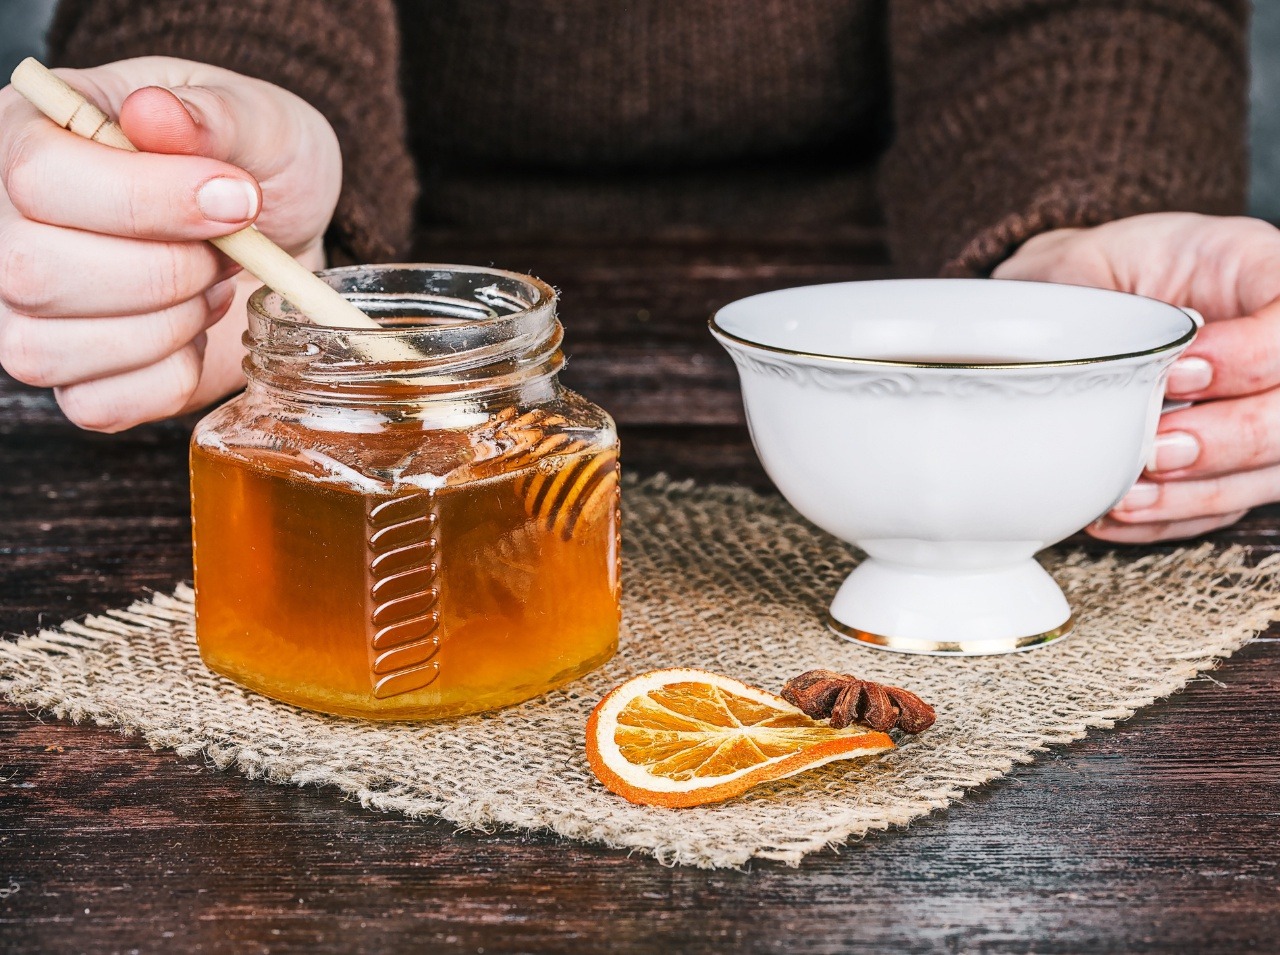 Med do horúceho čaju nepatrí, prídete o jeho účinné látky.